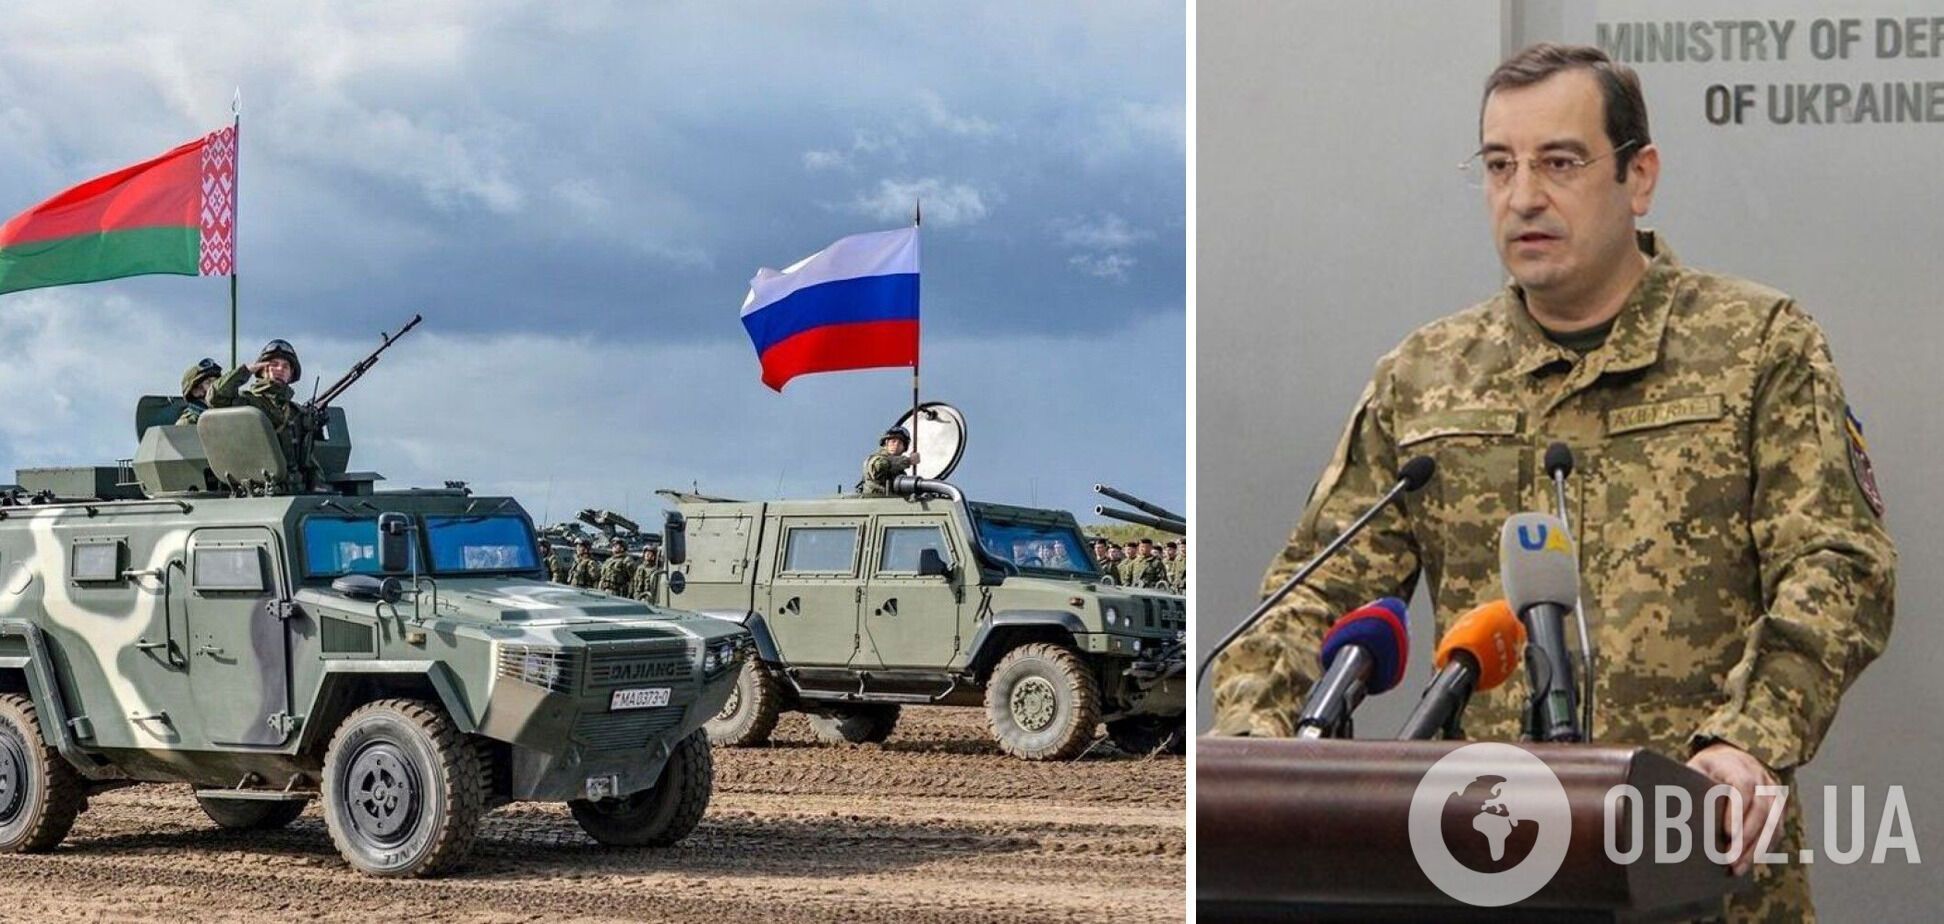 Скибицкий указал на угрозы для Украины со стороны соседней Беларуси, поддерживающей РФ